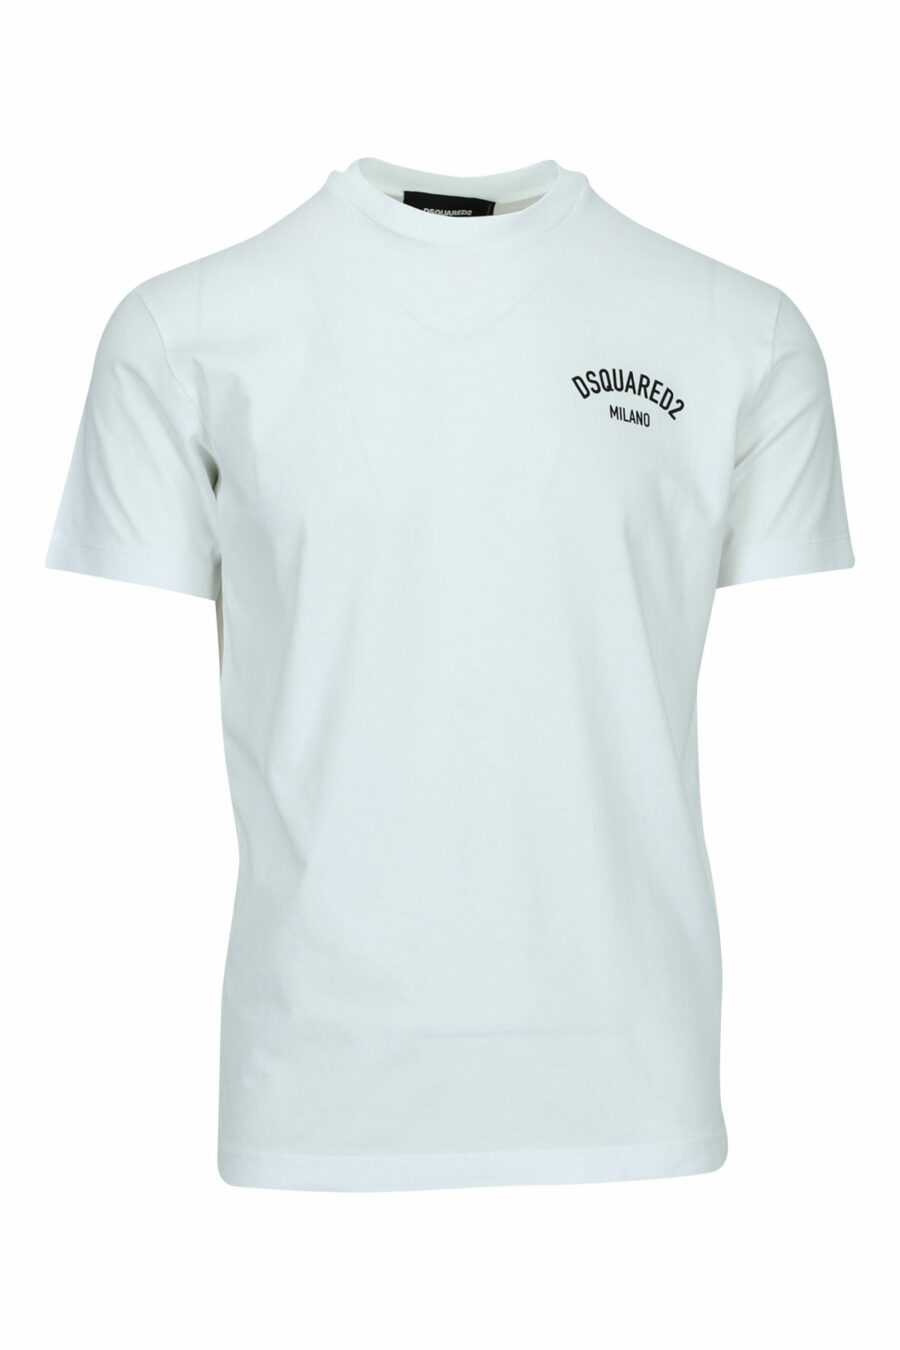 T-shirt branca com o logótipo "milano" dobrado - 8054148570989 scaled